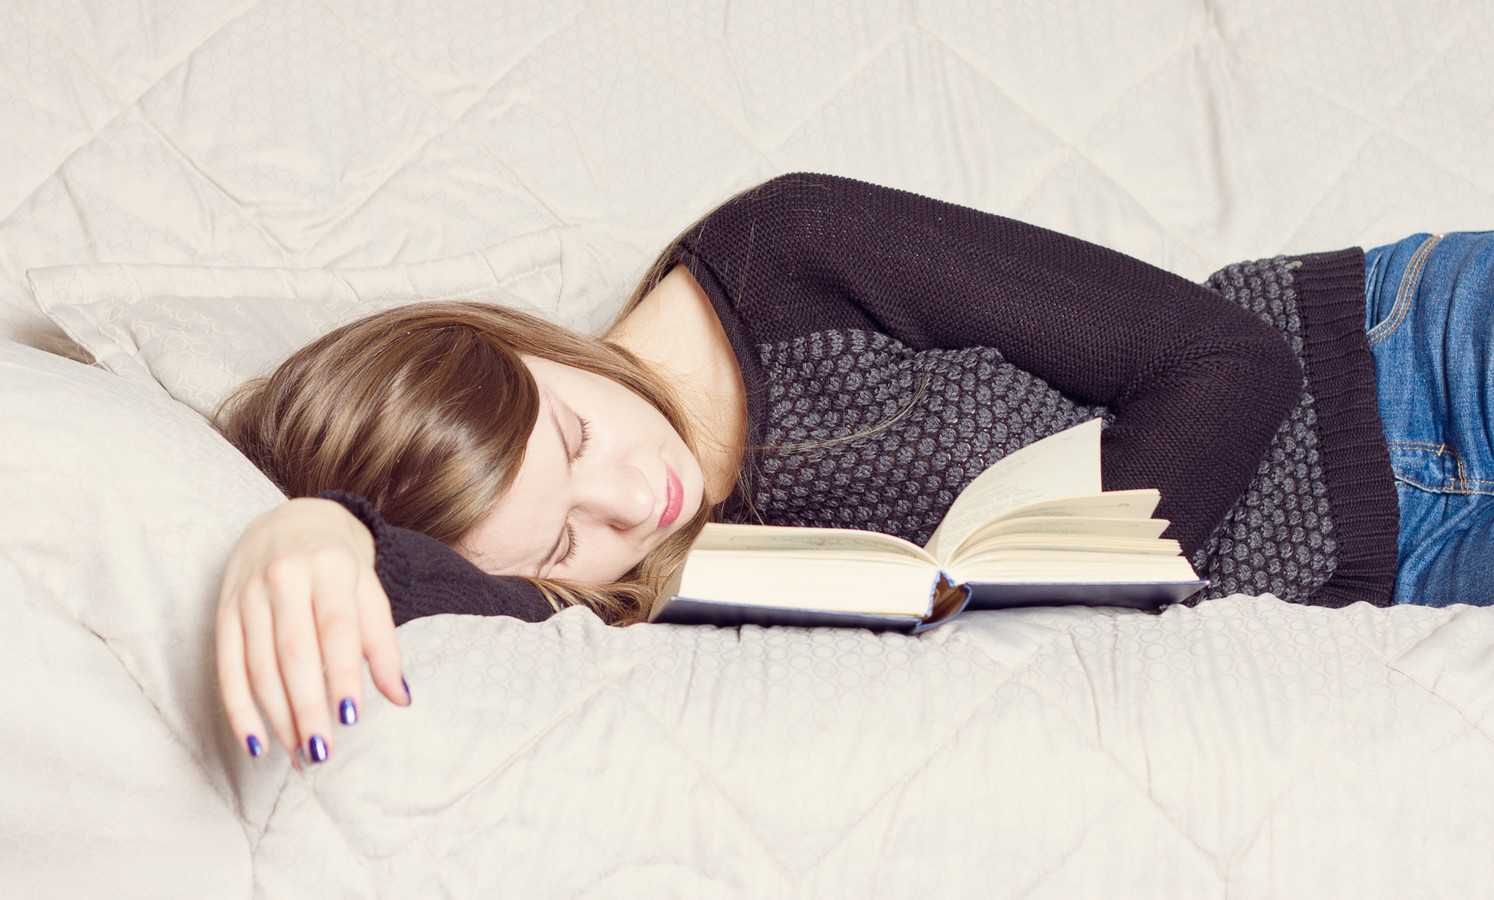 Спящие девушки на диване. Девушка лежит с книгой. Девушка заснула с книгой. Книга лежит. Девушка уснула на диване с книжкой.